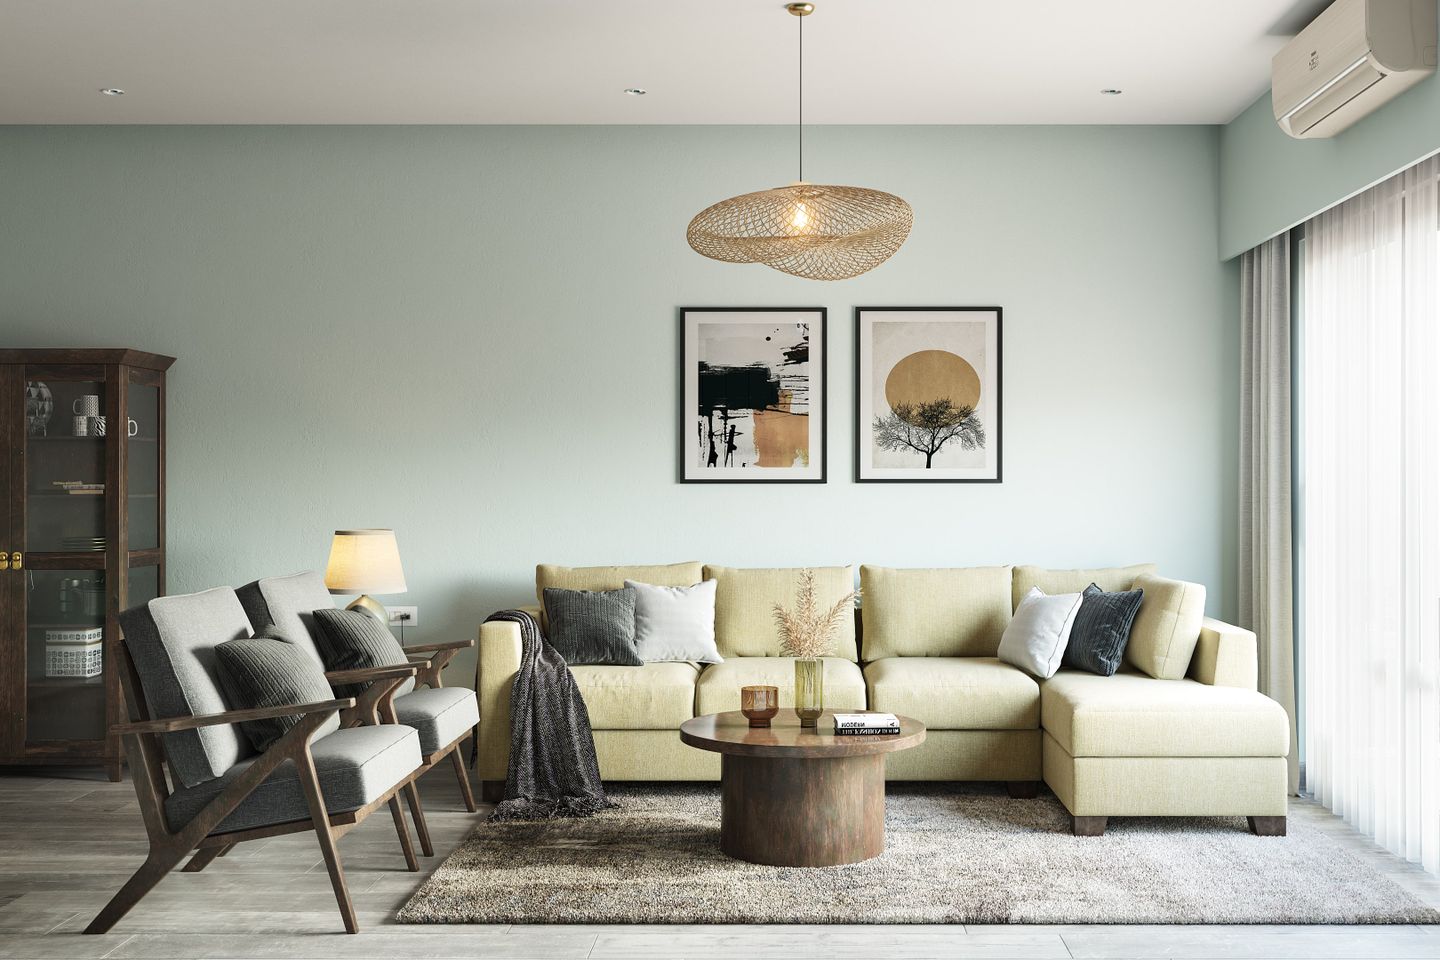 Living Room Design With A Cane Drop Light - Livspace